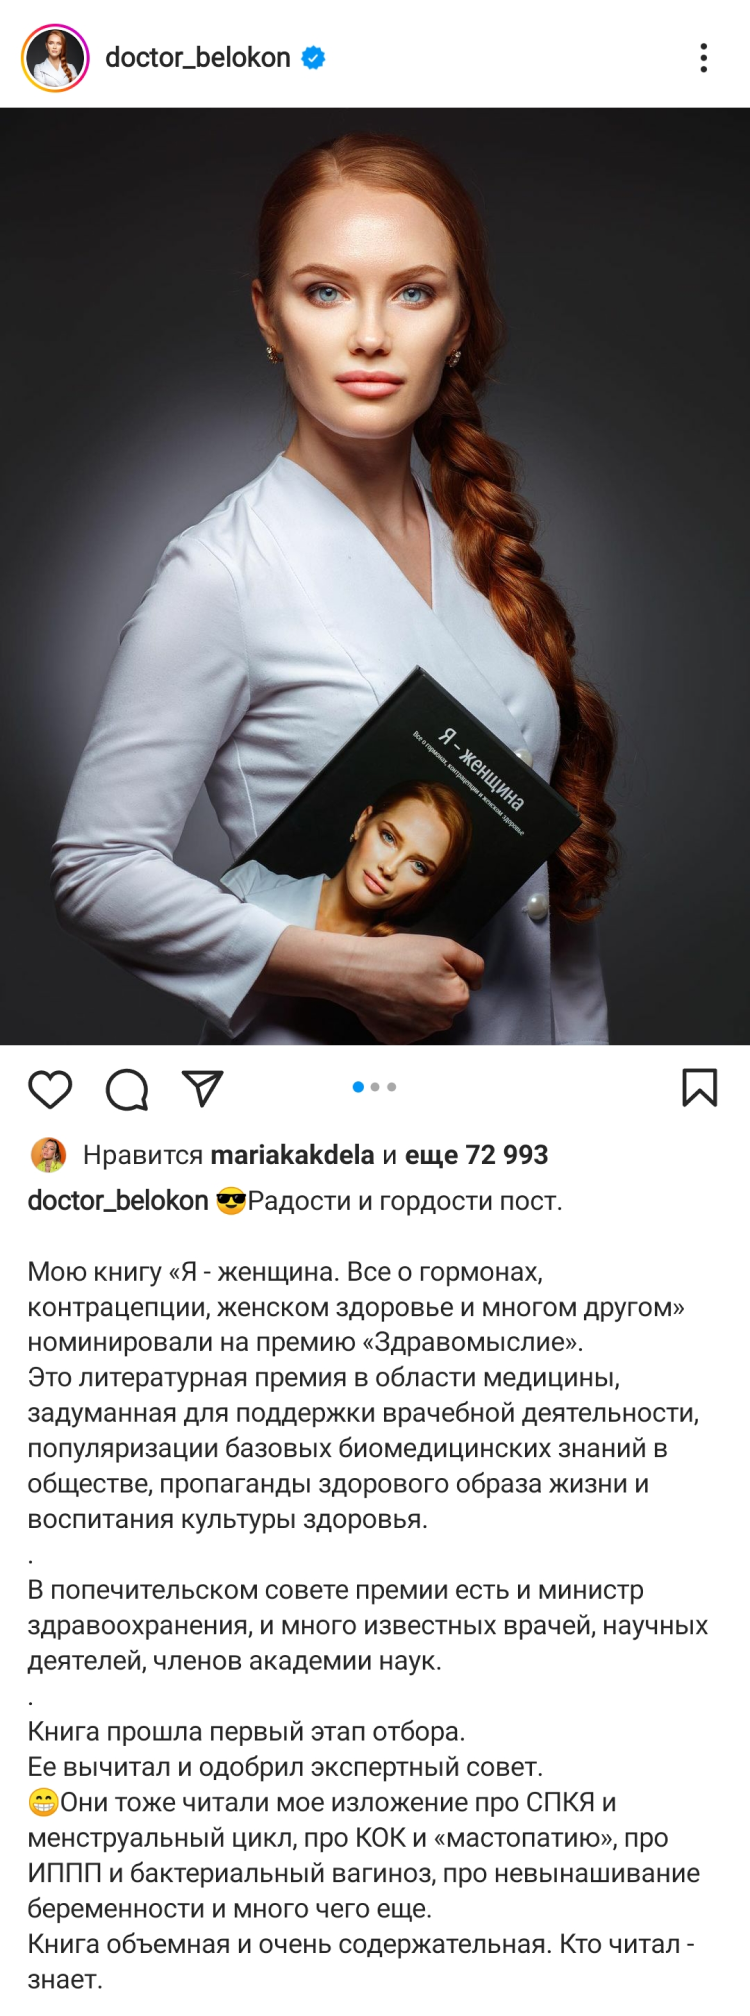 Книгу гинеколога-акушера Ольги Белоконь номинировали на престижную премию